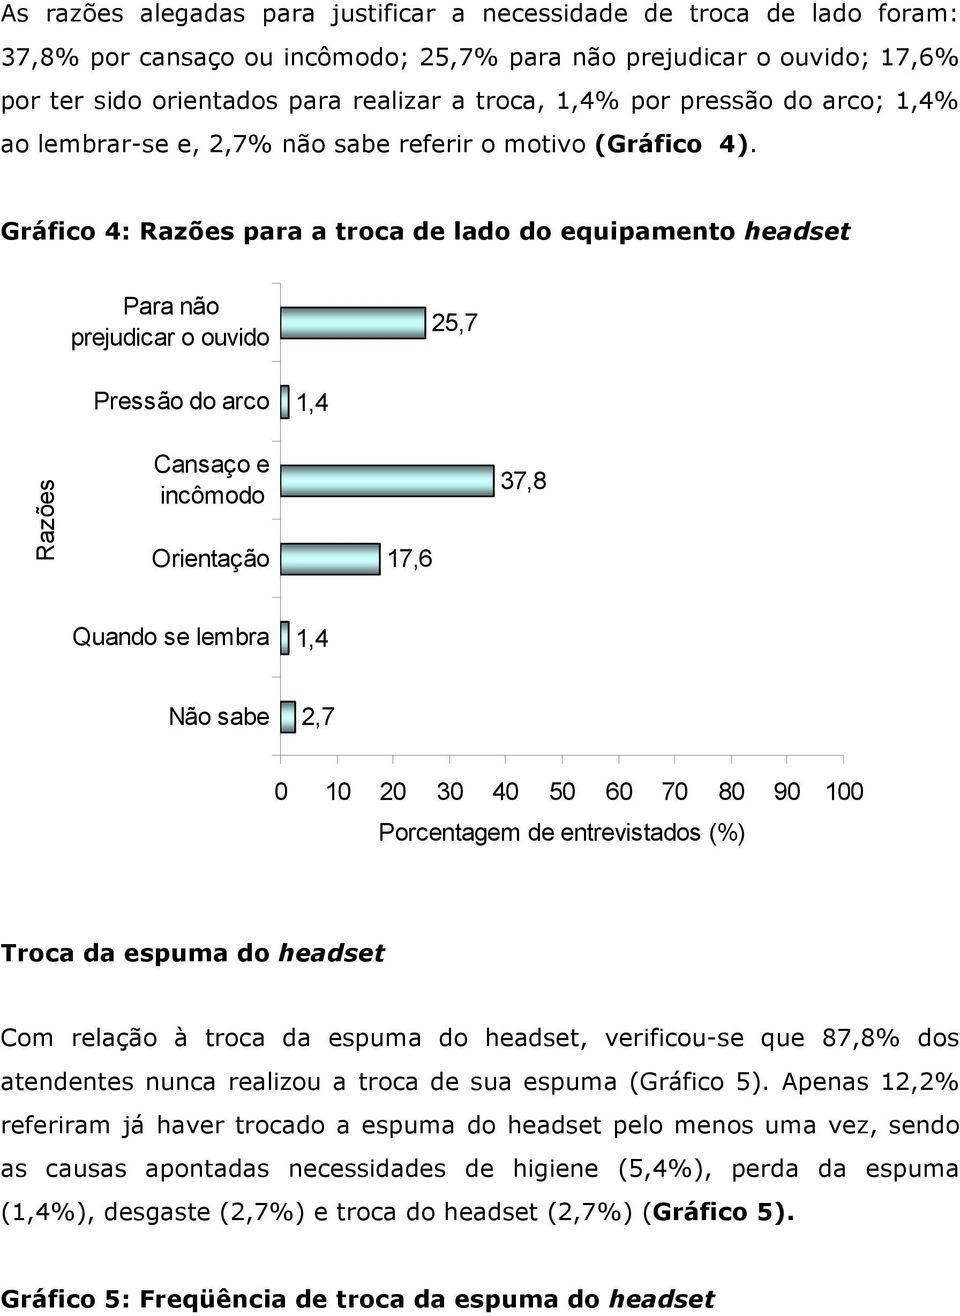 Gráfico 4: Razões para a troca de lado do equipamento headset Para não prejudicar o ouvido 25,7 Pressão do arco 1,4 Razões Cansaço e incômodo Orientação 17,6 37,8 Quando se lembra 1,4 Não sabe 2,7 0